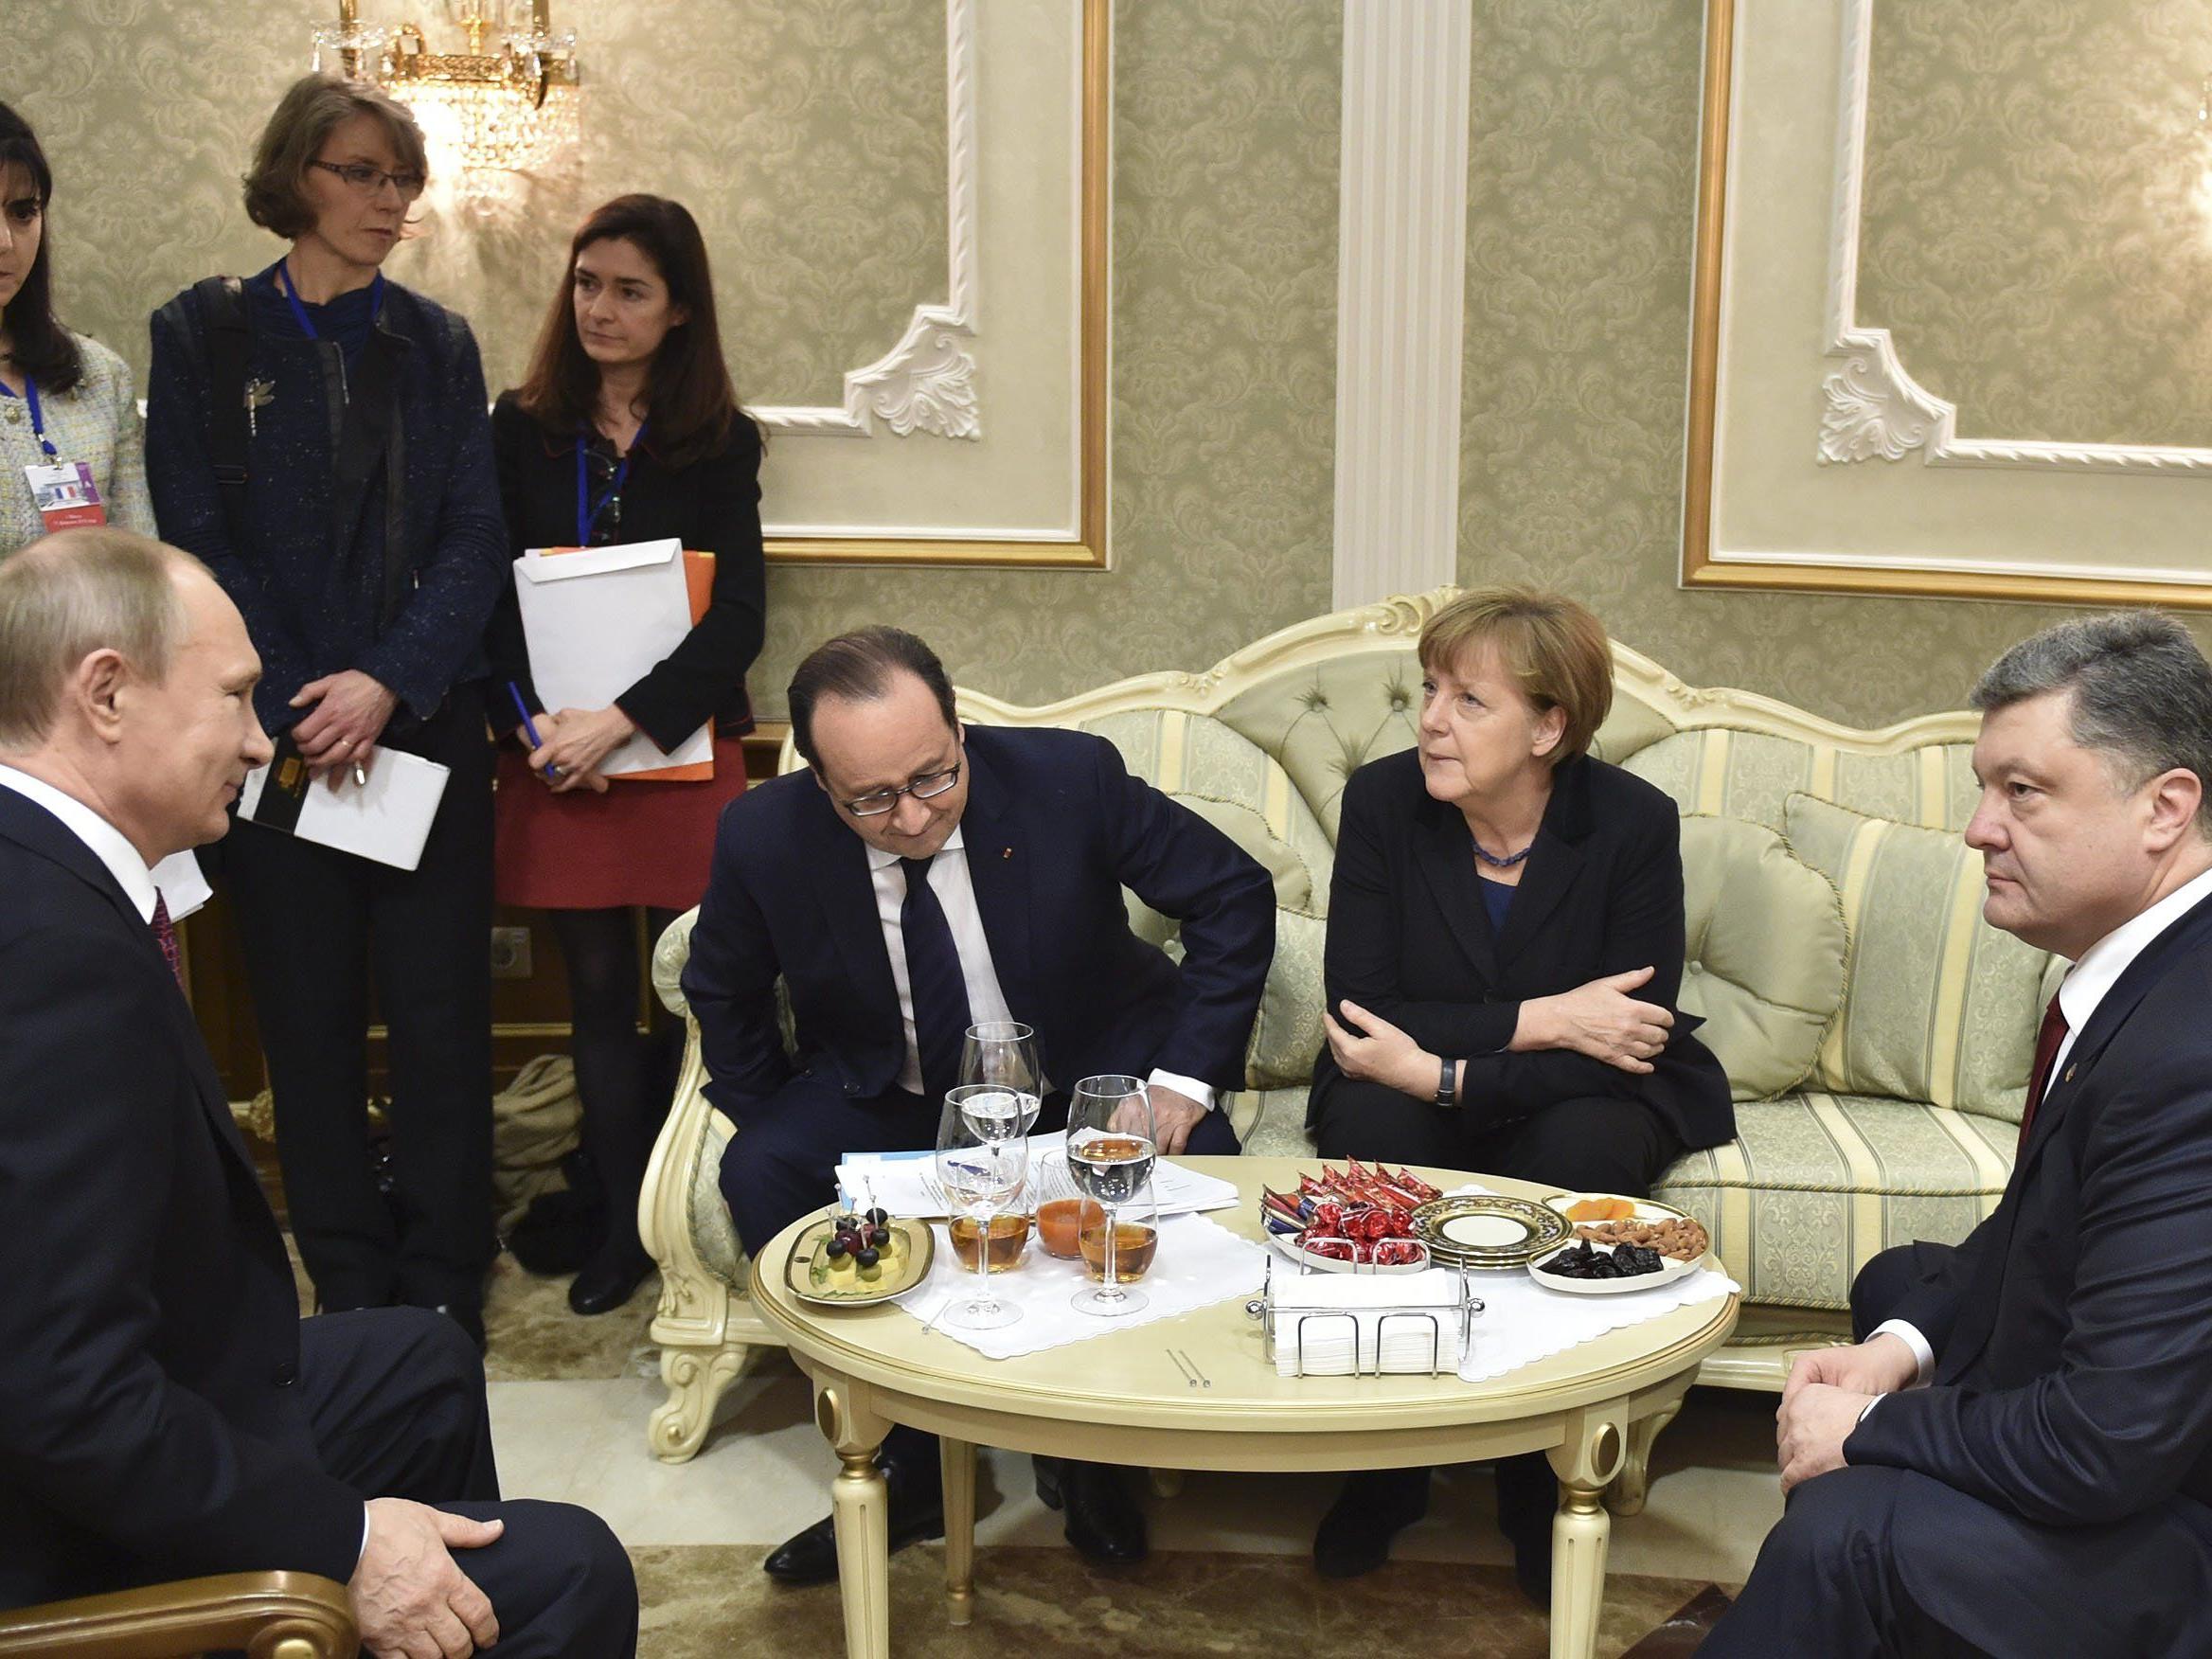 Der Runde Tisch, an dem die Ukraine-Krise abkühlen oder eskalieren könnte.